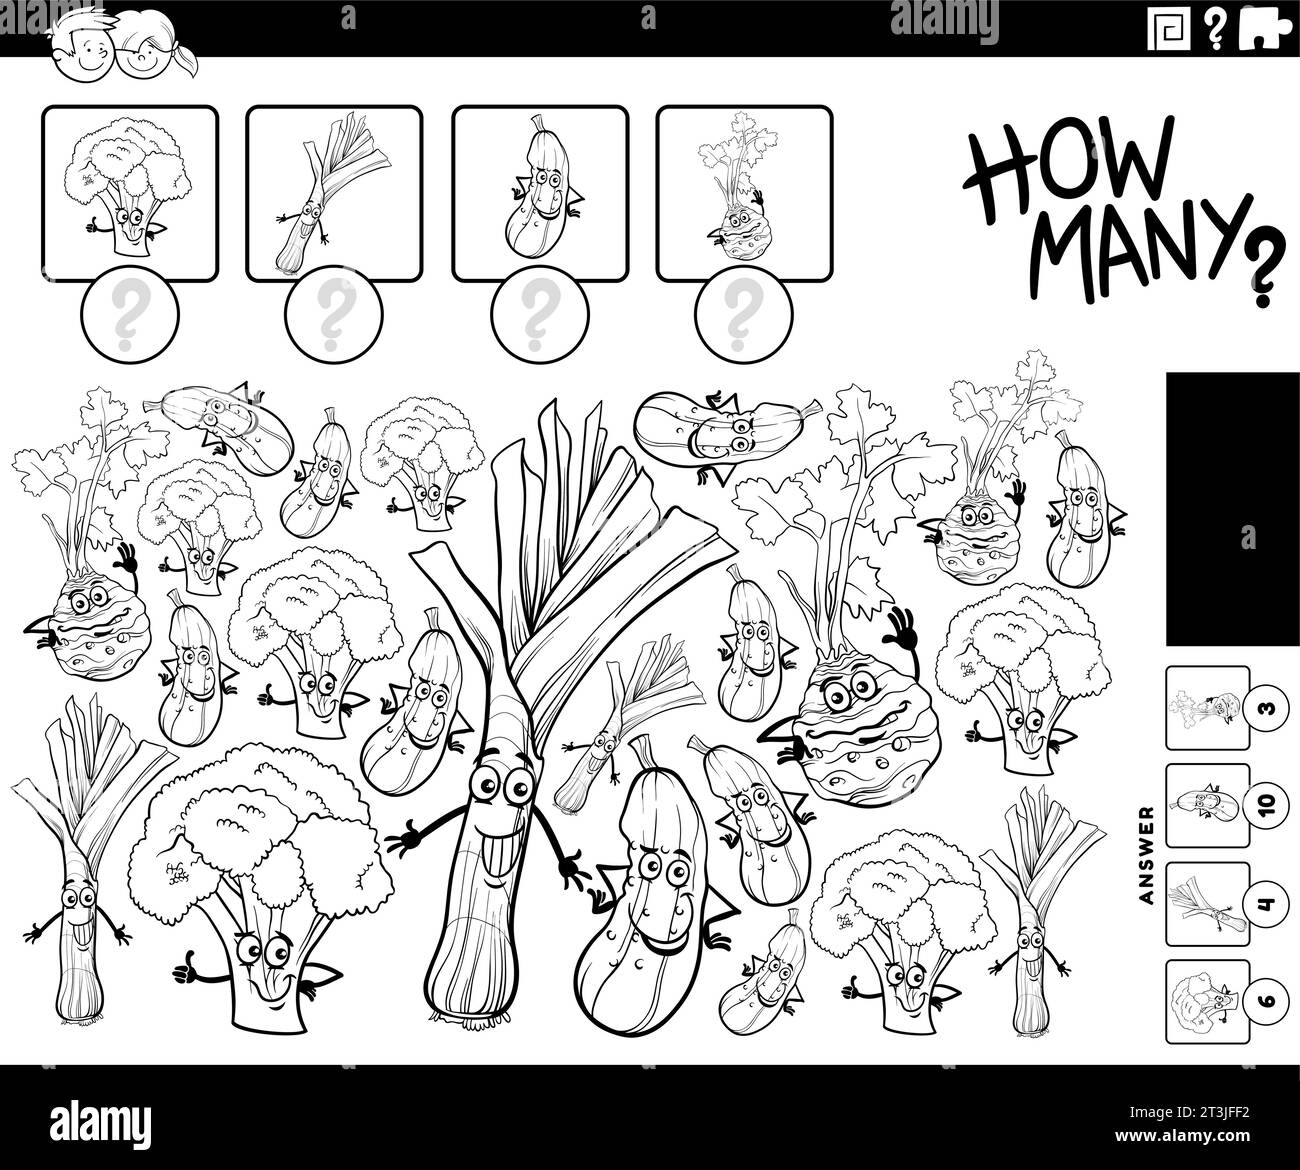 Illustrazione in bianco e nero dell'attività didattica di conteggio con la pagina di colorazione delle verdure a fumetti Illustrazione Vettoriale